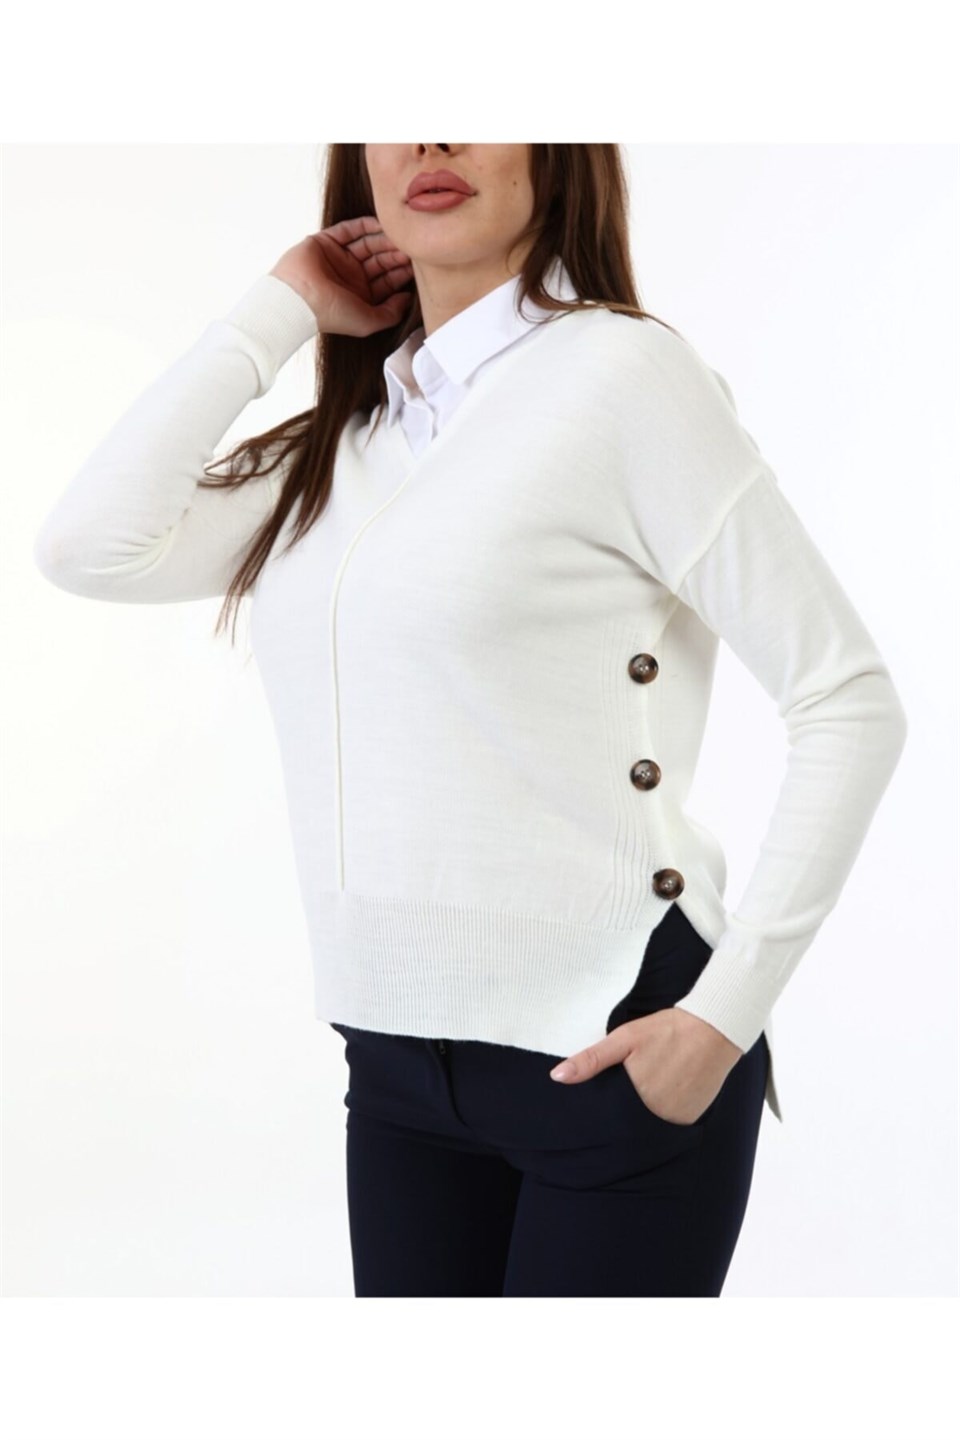 Kadın Yandan Düğmeli Gömlek Yaka Beyaz Kazak | aqefashion.com